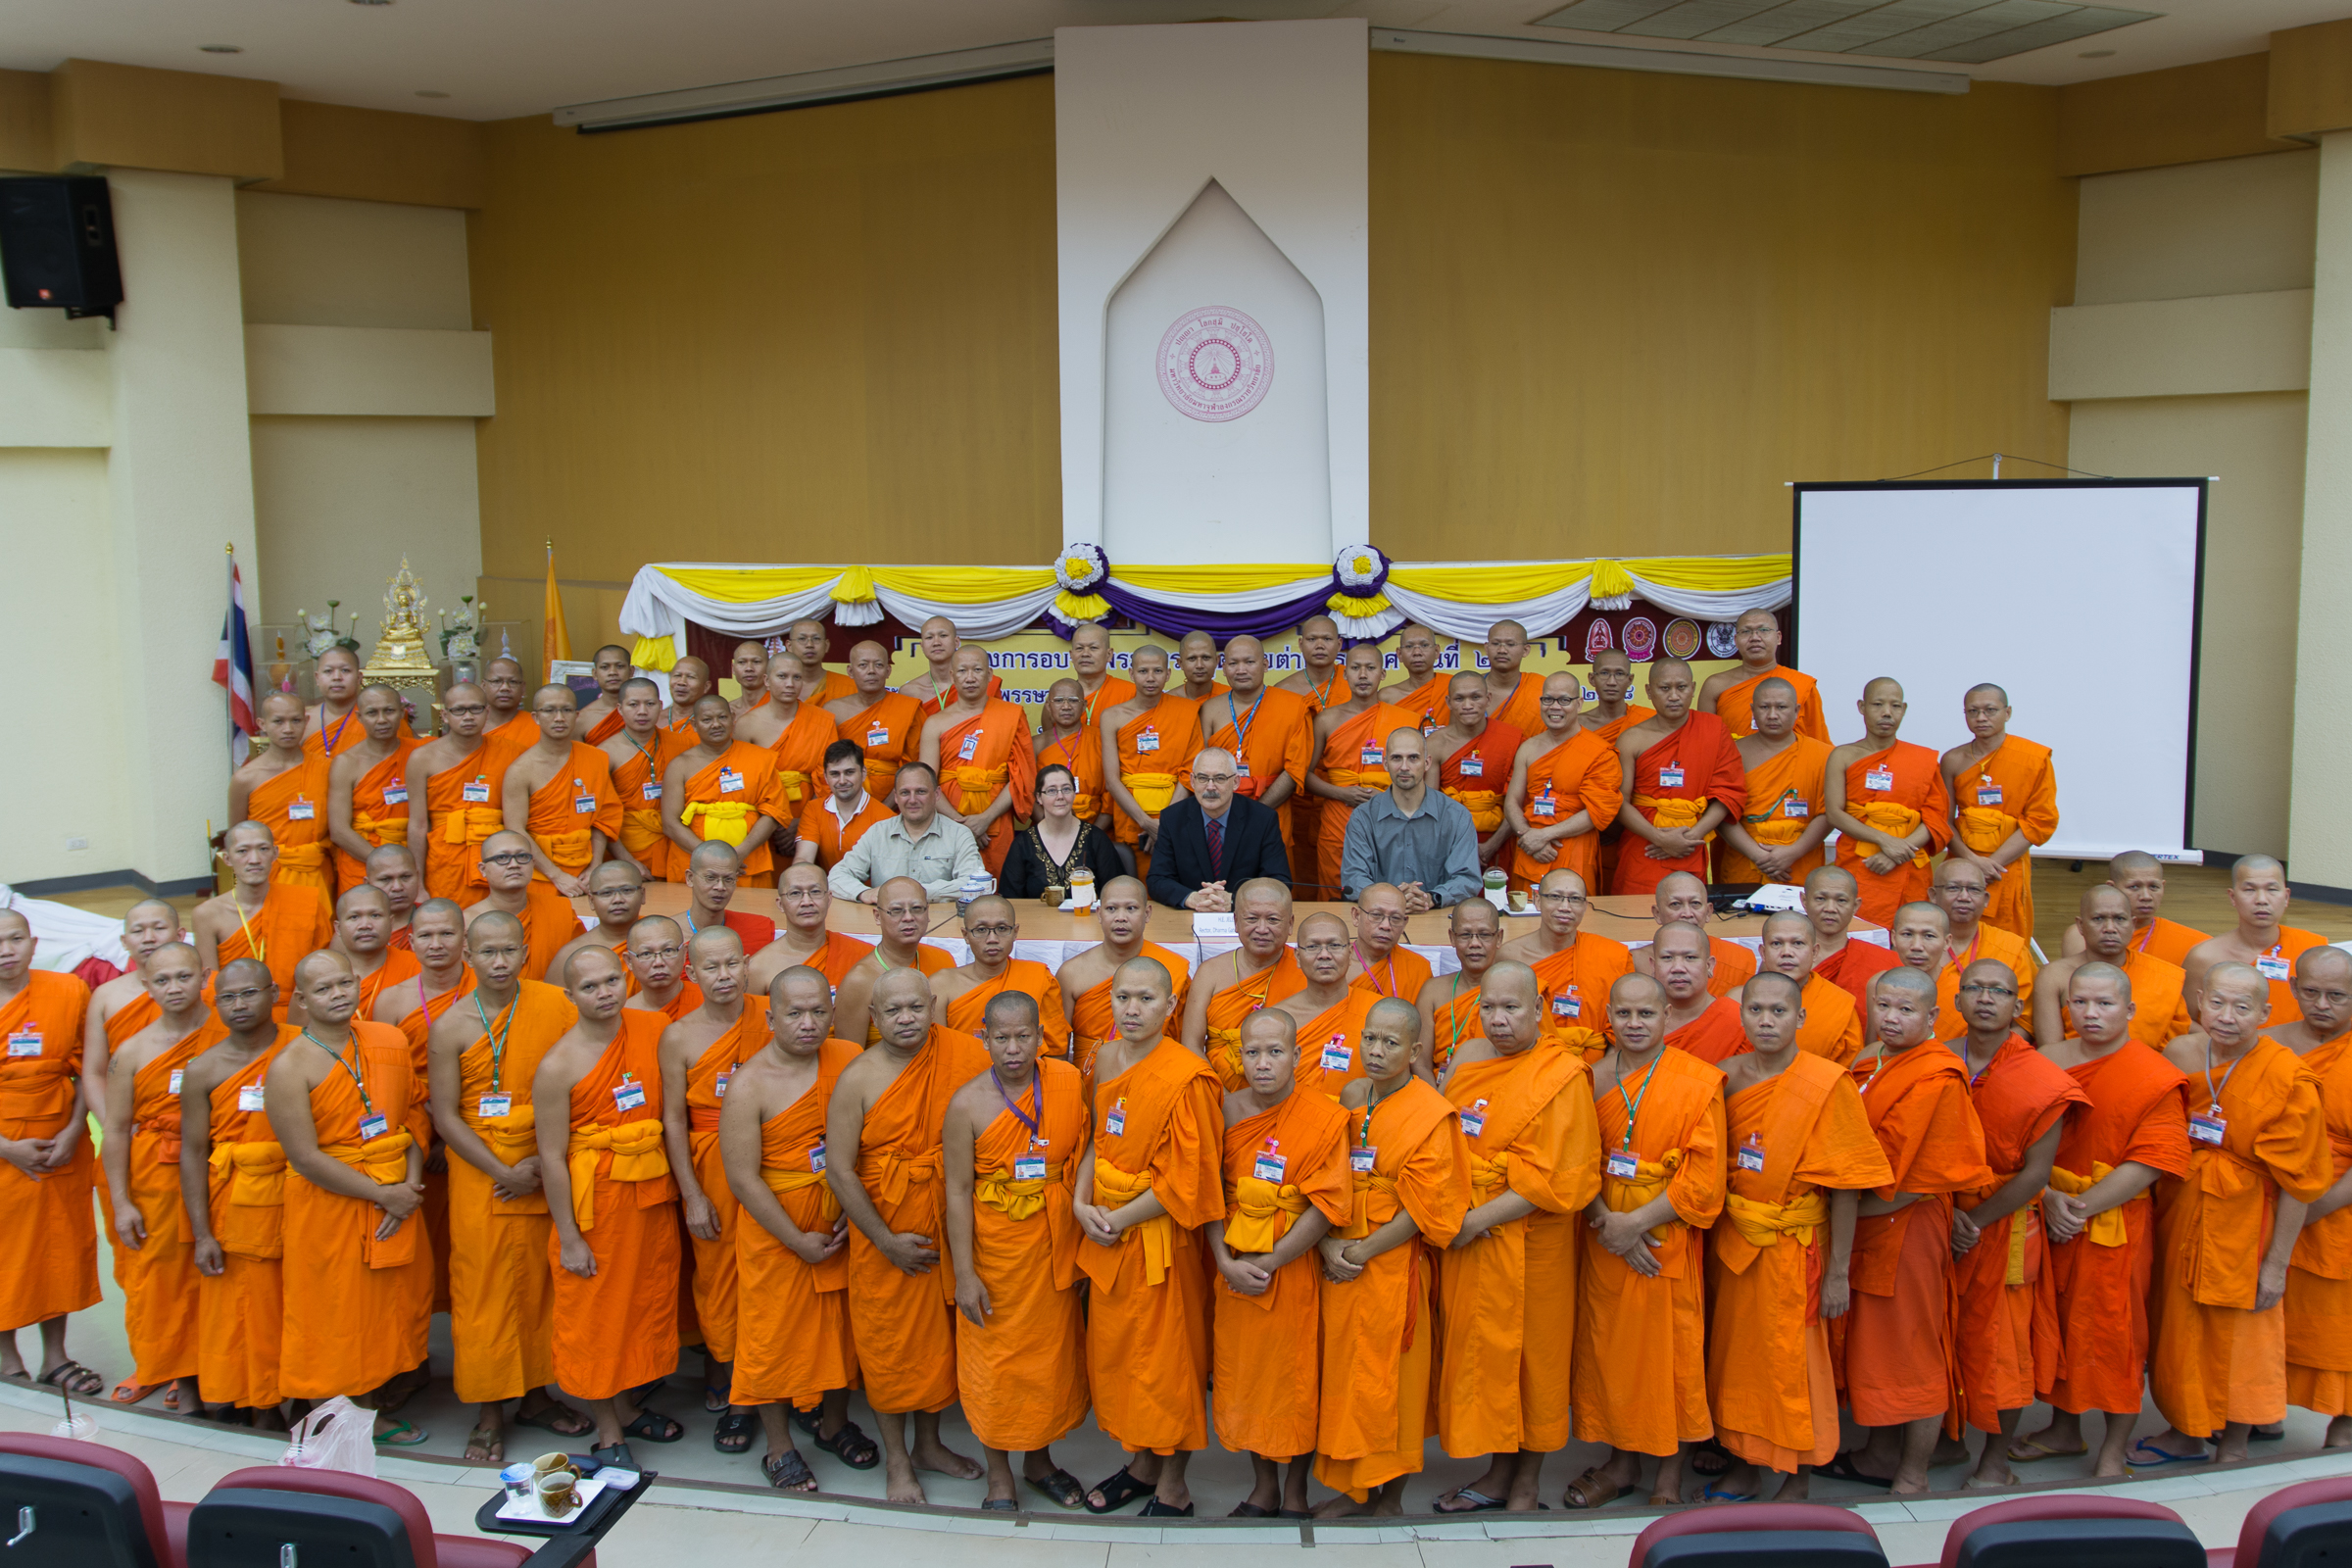 Három vezető apát, akik pár nappal korábban Budapesten voltak nálunk vendégek, meghívott minket kolostorukba, ahol meleg szívvel fogadtak bennünket.   Utána felkértek minket, hogy mutassuk be a Főiskolát a thaiföldi egyetemi partnerünk diákjainak egy előadás keretében.